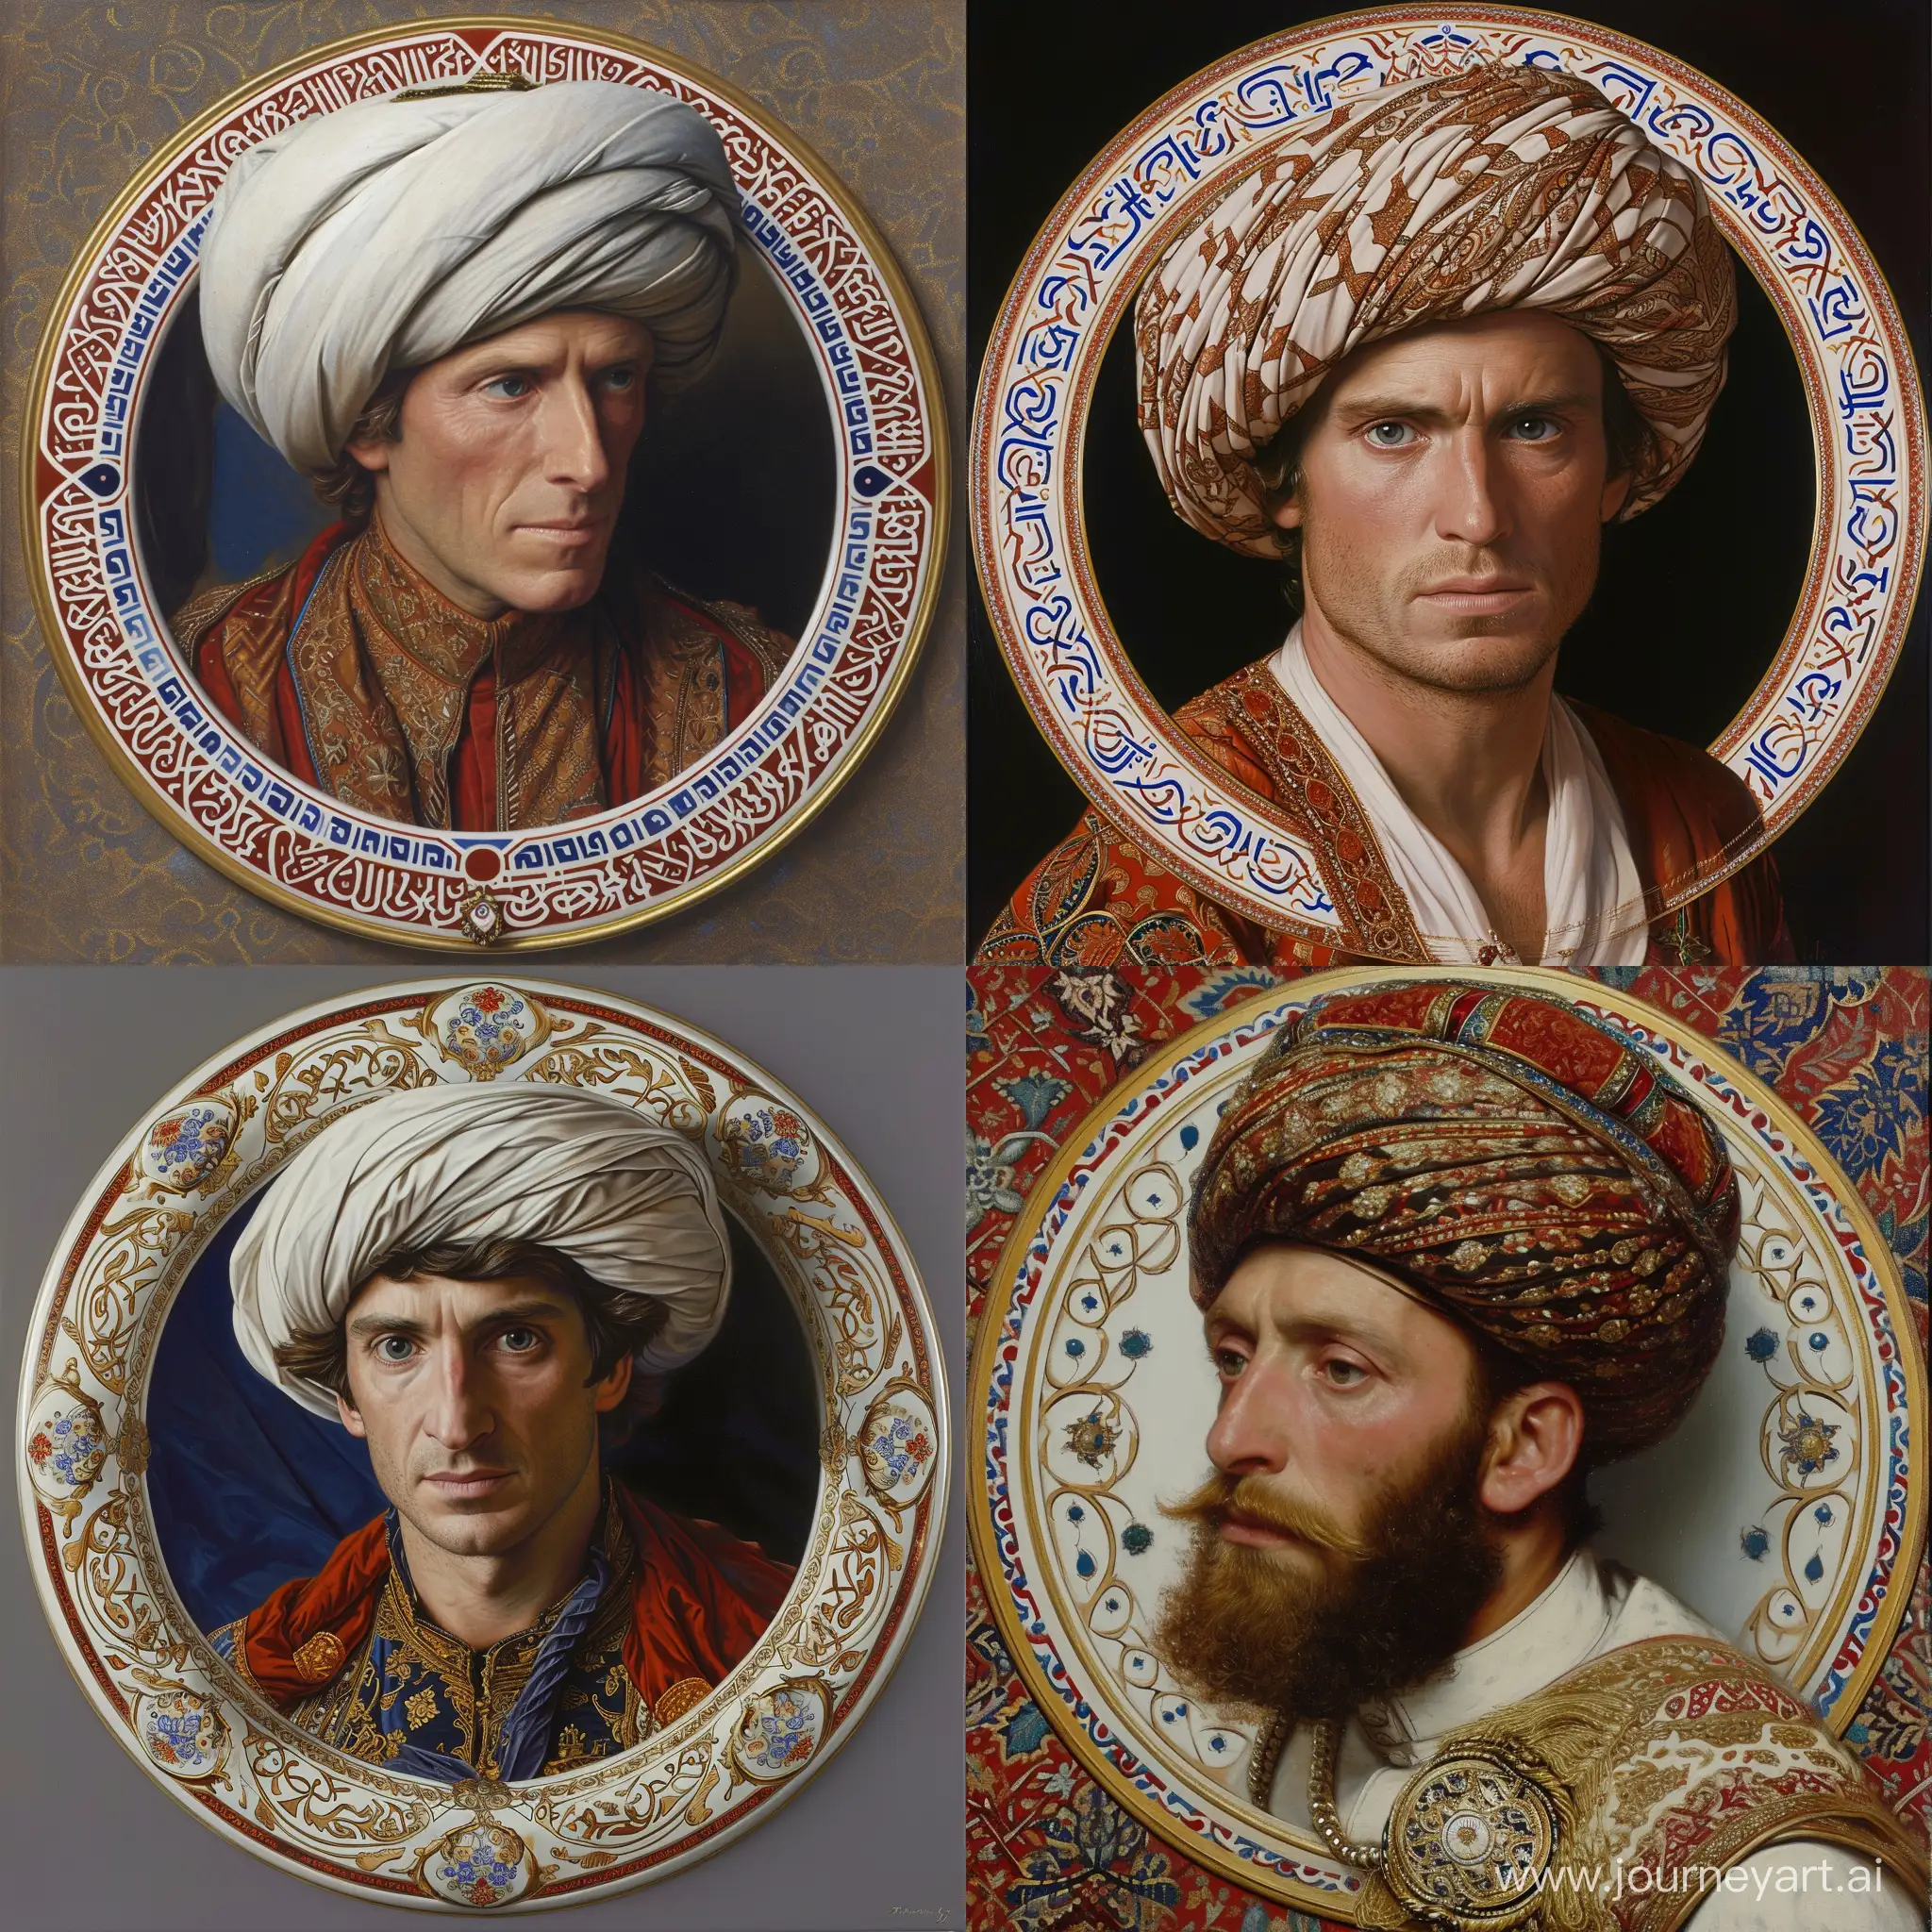 Edward-George-Earle-Lytton-BulwerLytton-1st-Baron-Lytton-in-Royal-Ottoman-Turban-and-Islamic-Attire-Portrait